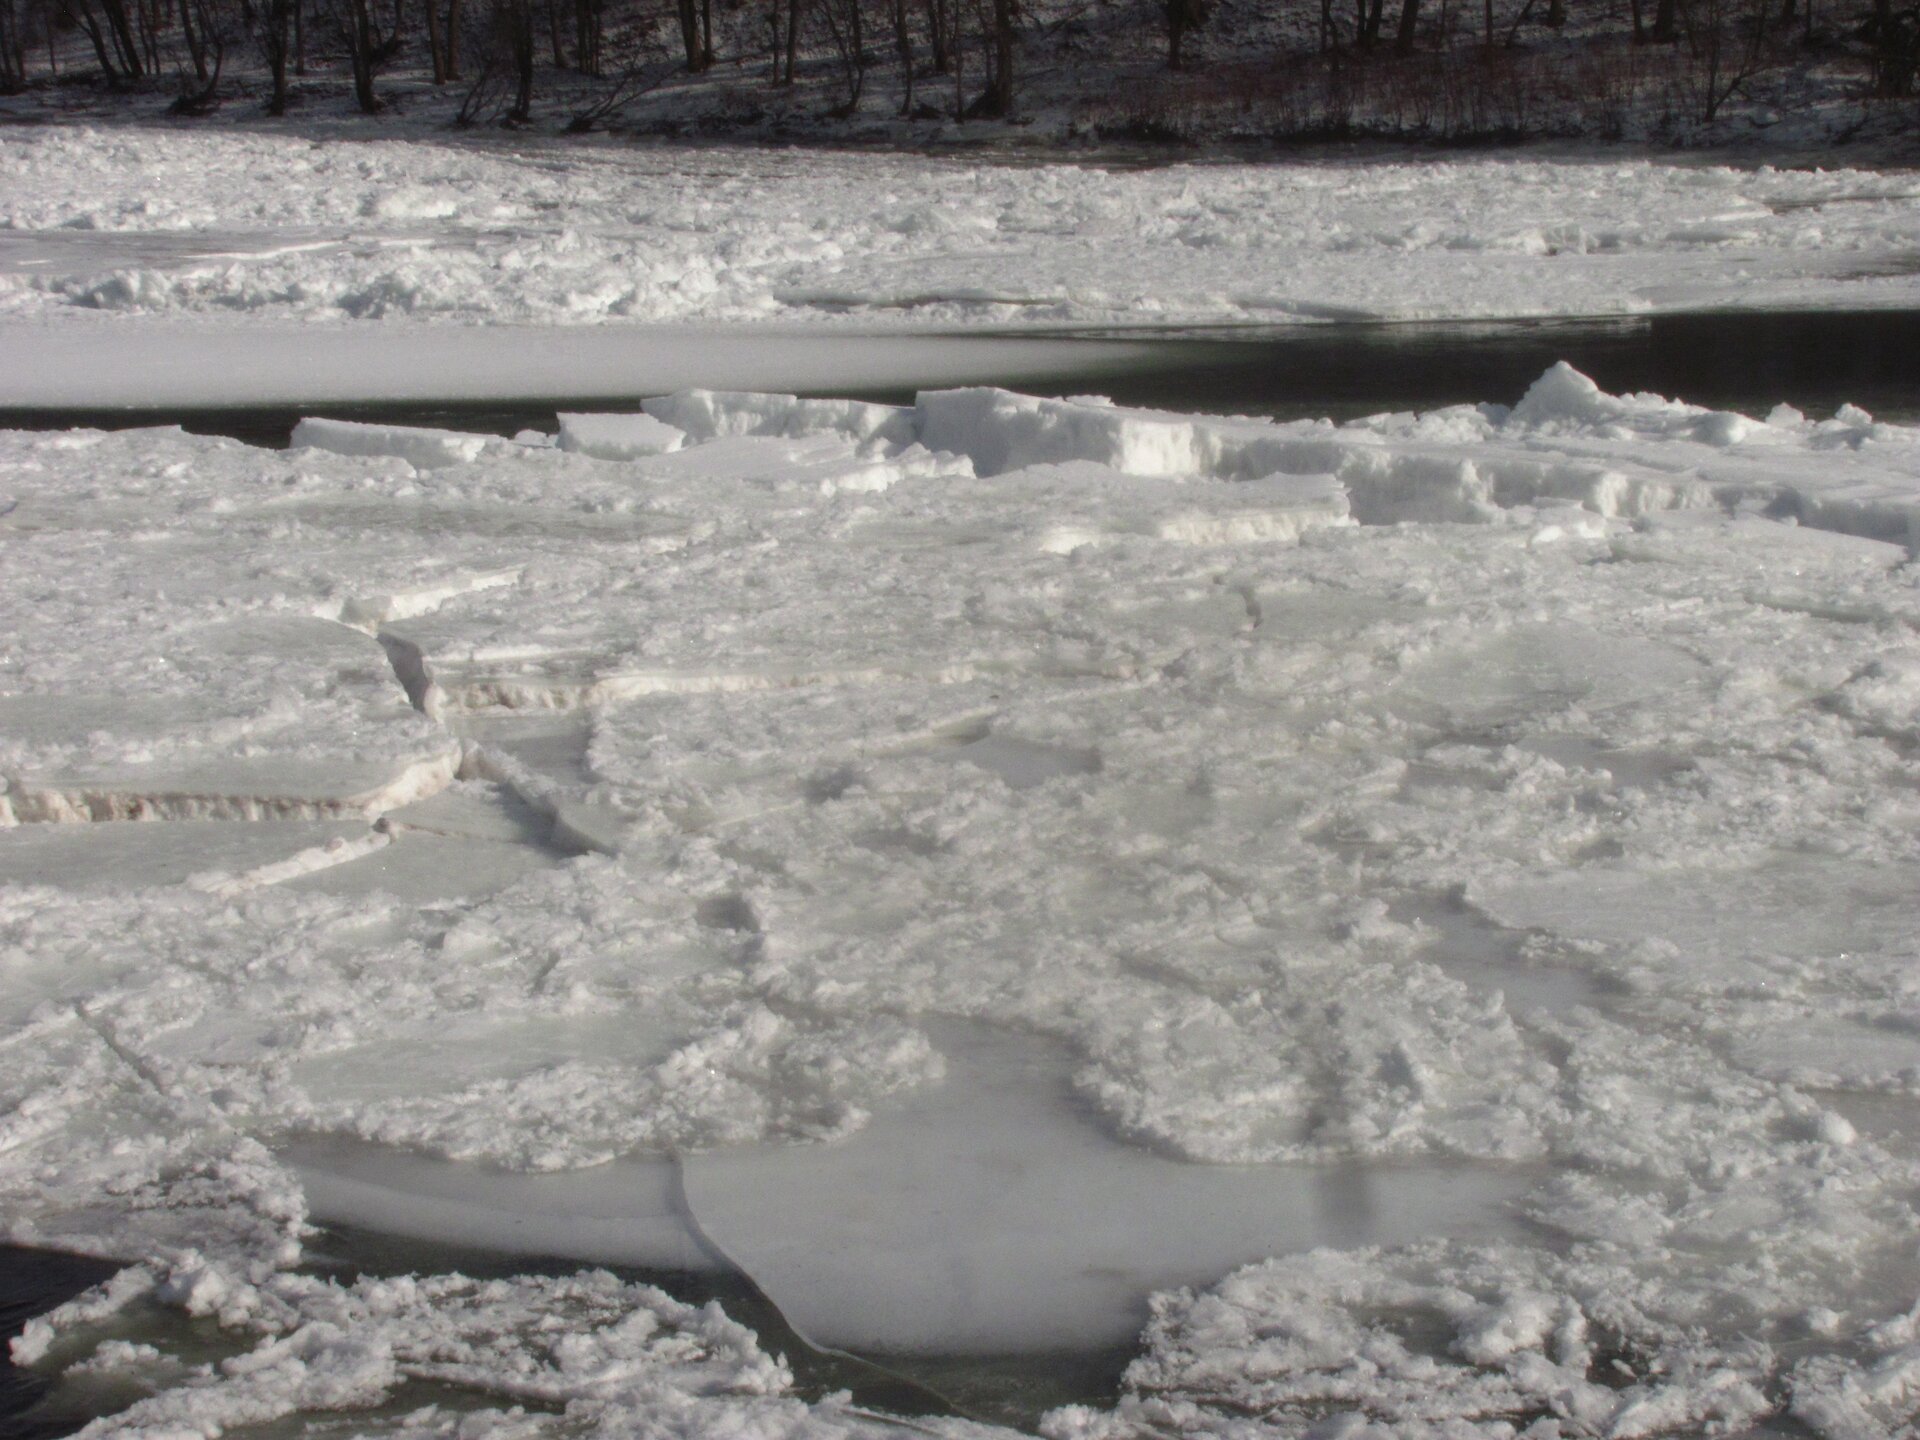 Zdjęcie przedstawia fragment rzeki. Zima. Dzień. Powierzchnia wody niewidoczna. Powierzchnia wody pokryta jest białym spękanym lodem. Duże płyty lodu mają kształt płaskich wielokątów. Krawędzie ostre, przeźroczyste. Niektóre kawałki lodu zachodzą na siebie. Grubość lodu wynosi nawet kilkadziesiąt centymetrów. Powierzchnia lodu pokryta warstwą śniegu. W tle widoczny fragment rzeki bez unoszącej się kry na powierzchni. Woda w kolorze czarnym. Na drugim planie dalsza część rzeki i brzeg. Cała powierzchnia rzeki aż po brzeg pokryta lodem i śniegiem. Brzeg rzeki w tle porośnięty gęsto drzewami.